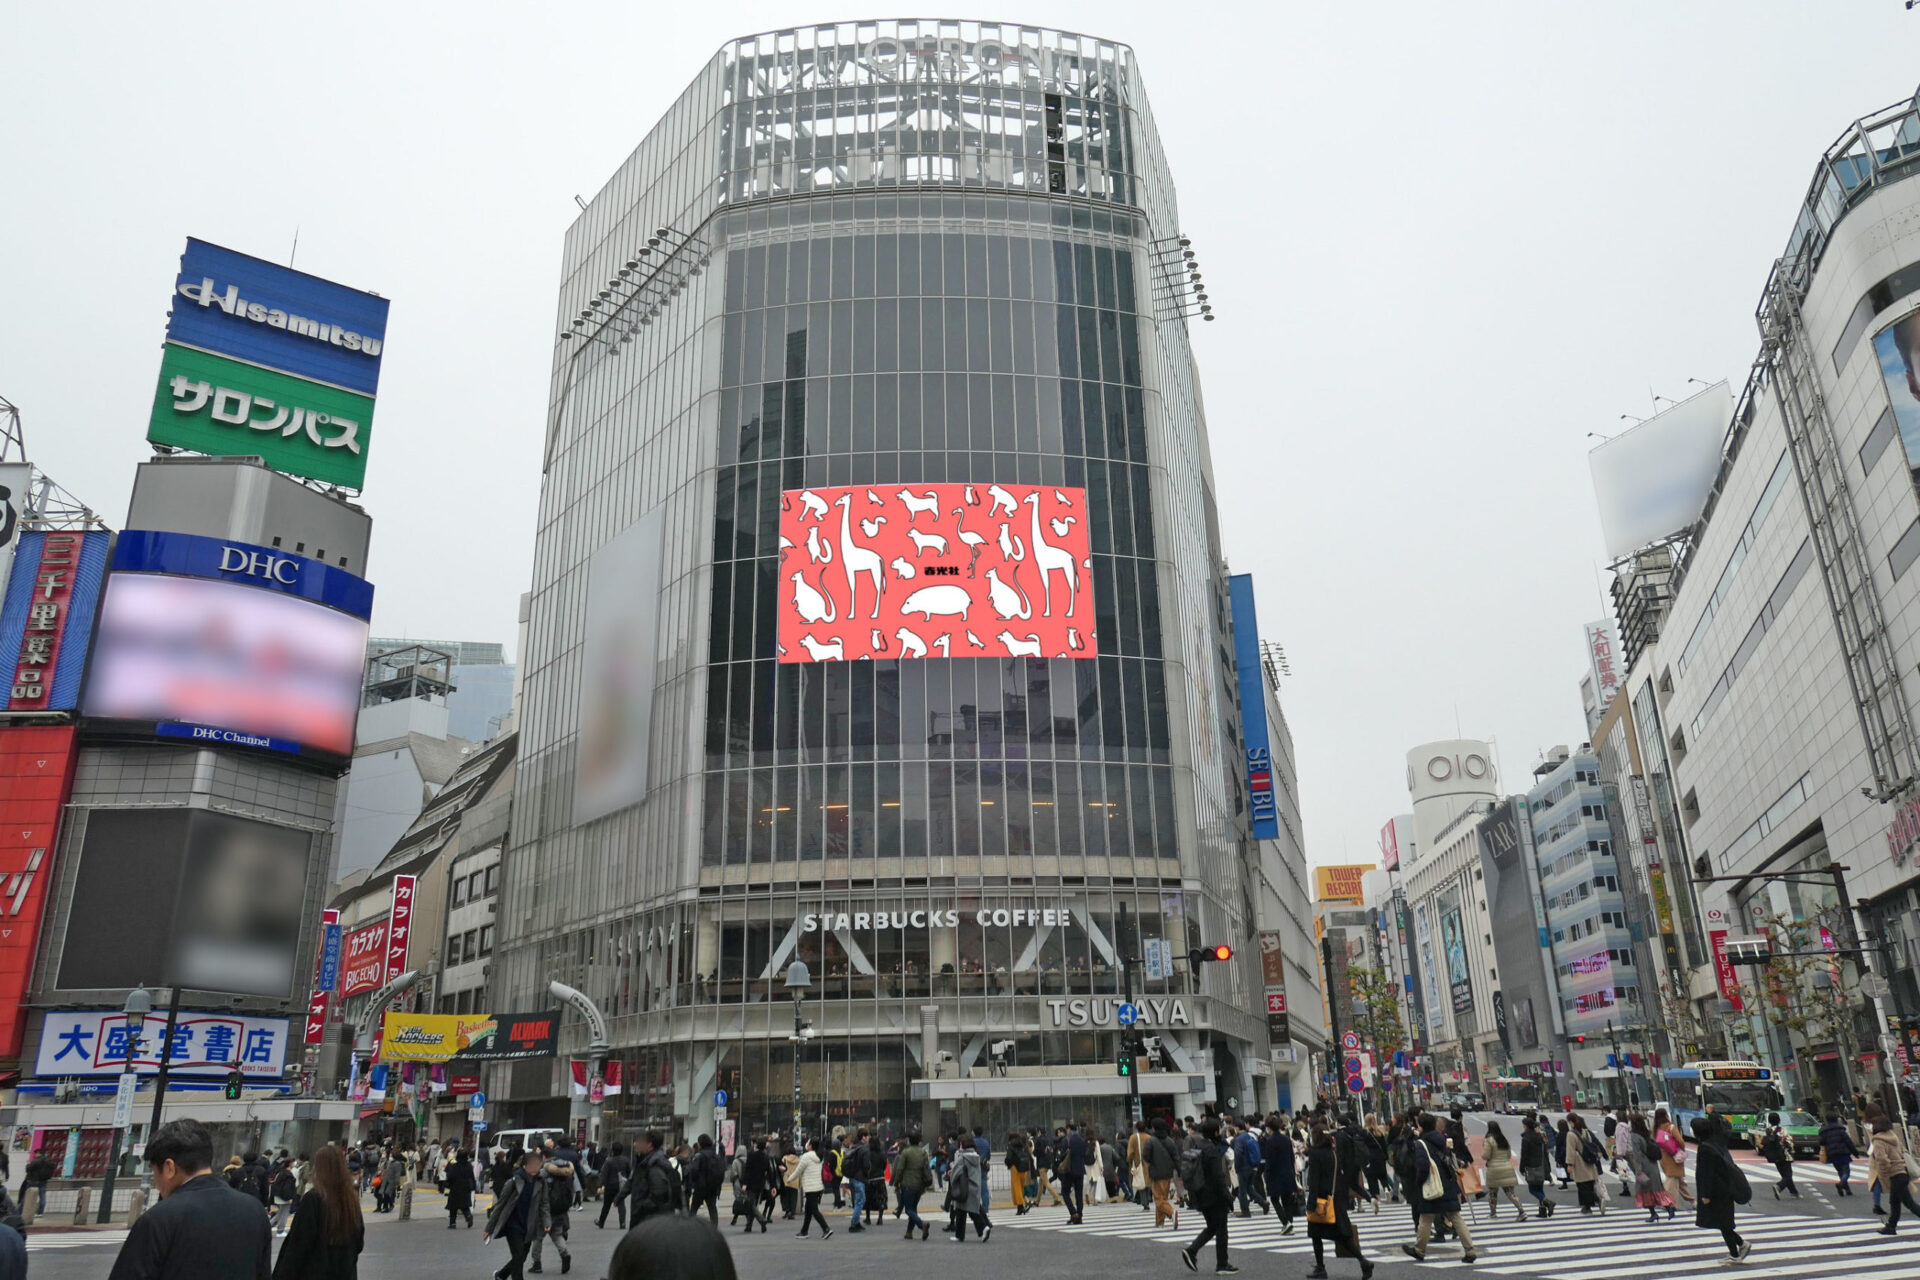 渋谷駅前QFRONTビル壁面に設置されている横型の大型デジタルサイネージ